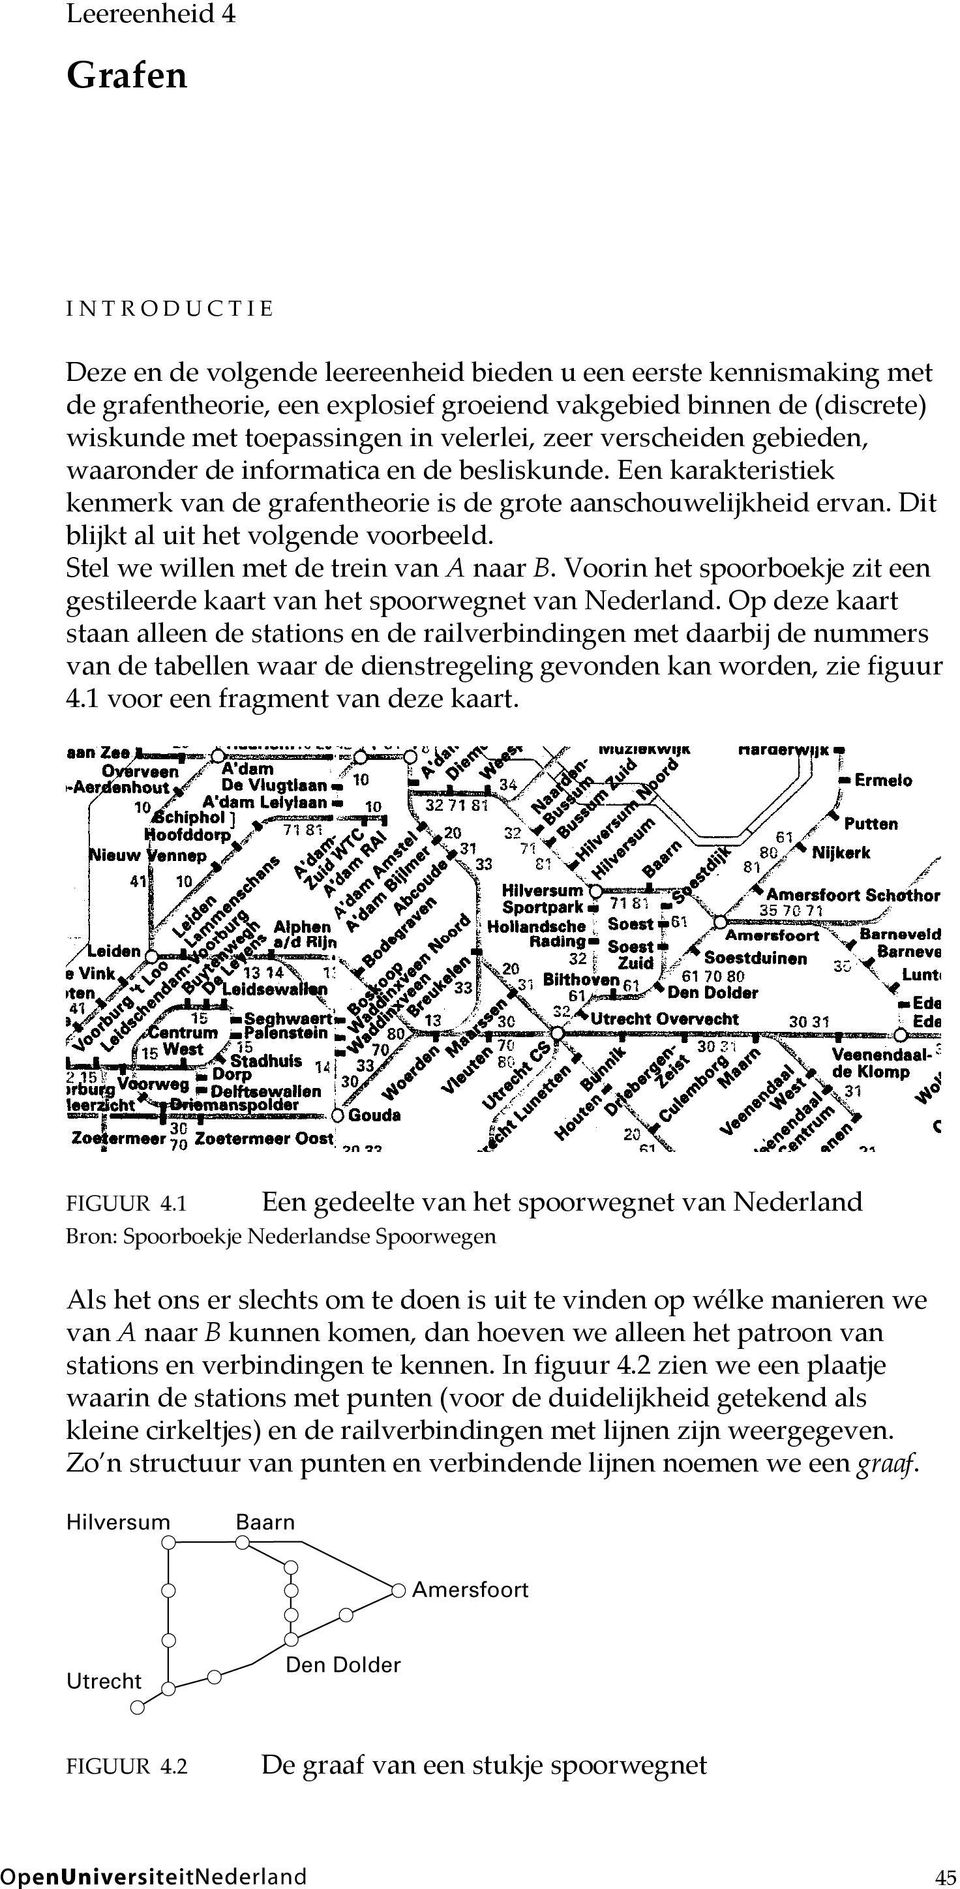 Dit blijkt al uit het volgende voorbeeld. Stel we willen met de trein van A naar B. Voorin het spoorboekje zit een gestileerde kaart van het spoorwegnet van Nederland.